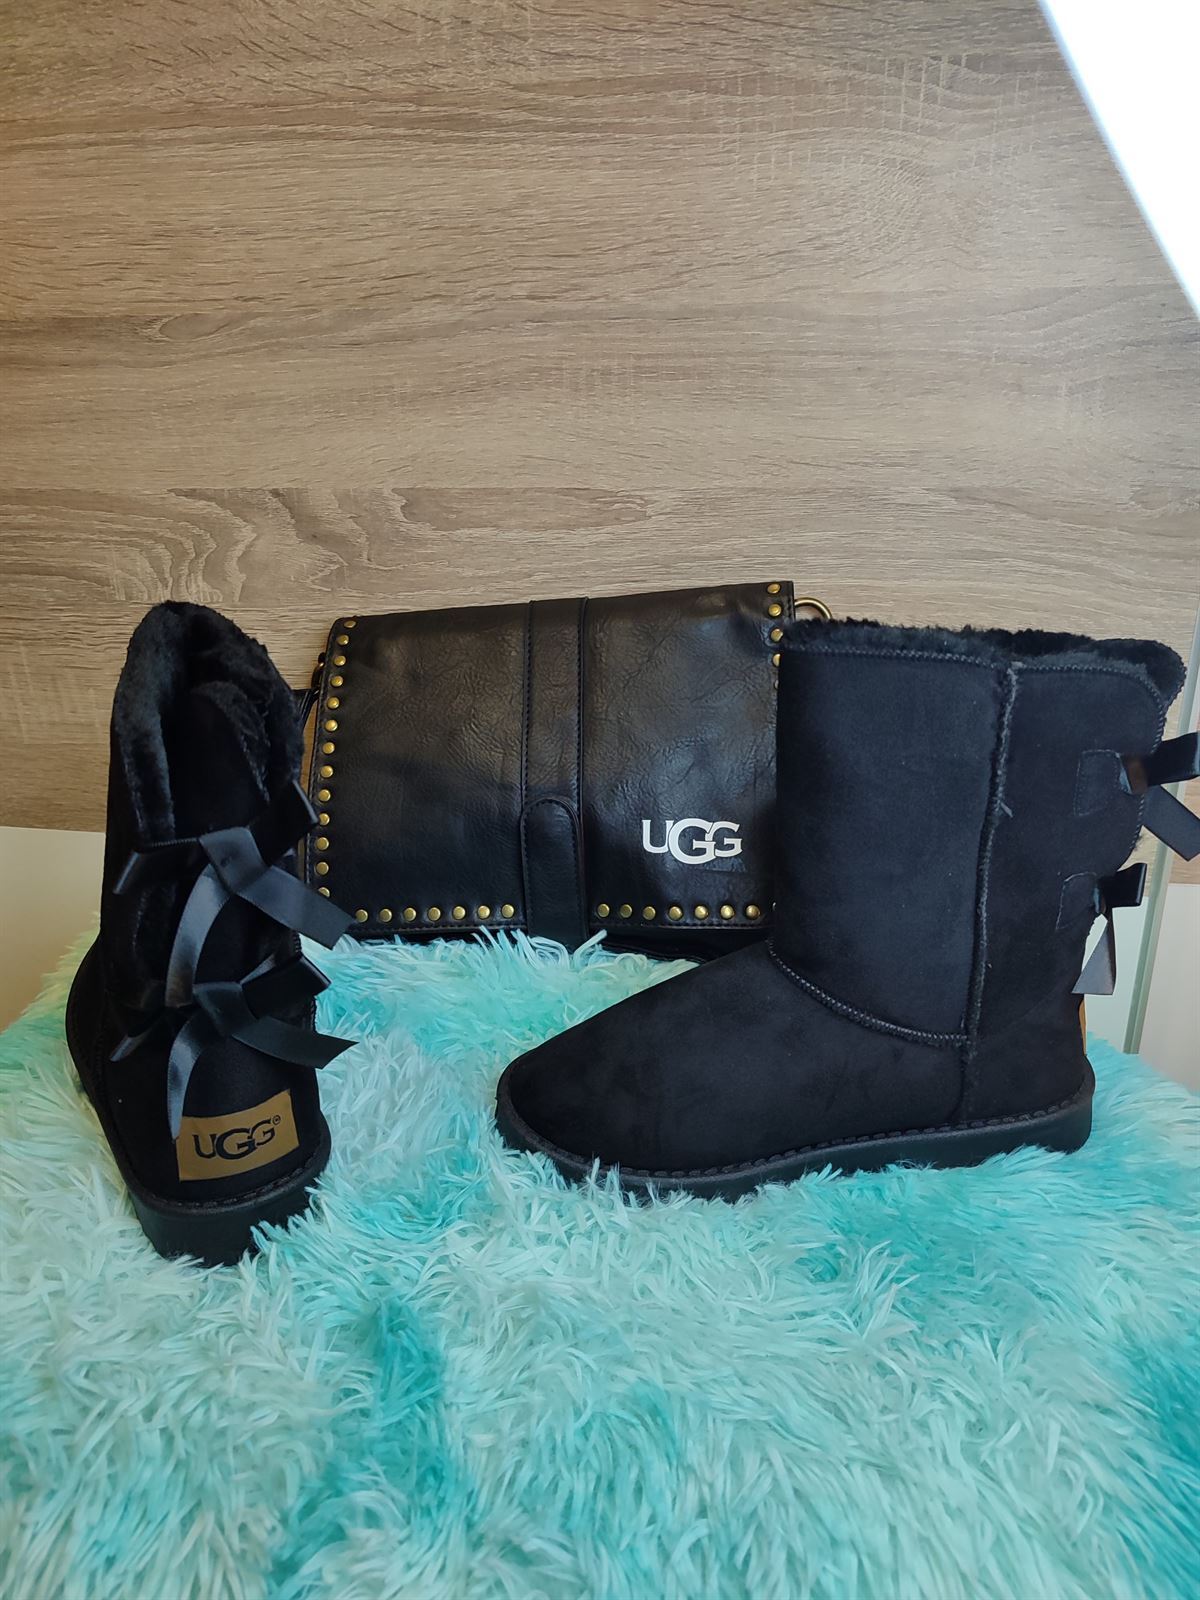 Conjunto de bolso y botas Ugg - Imagen 2